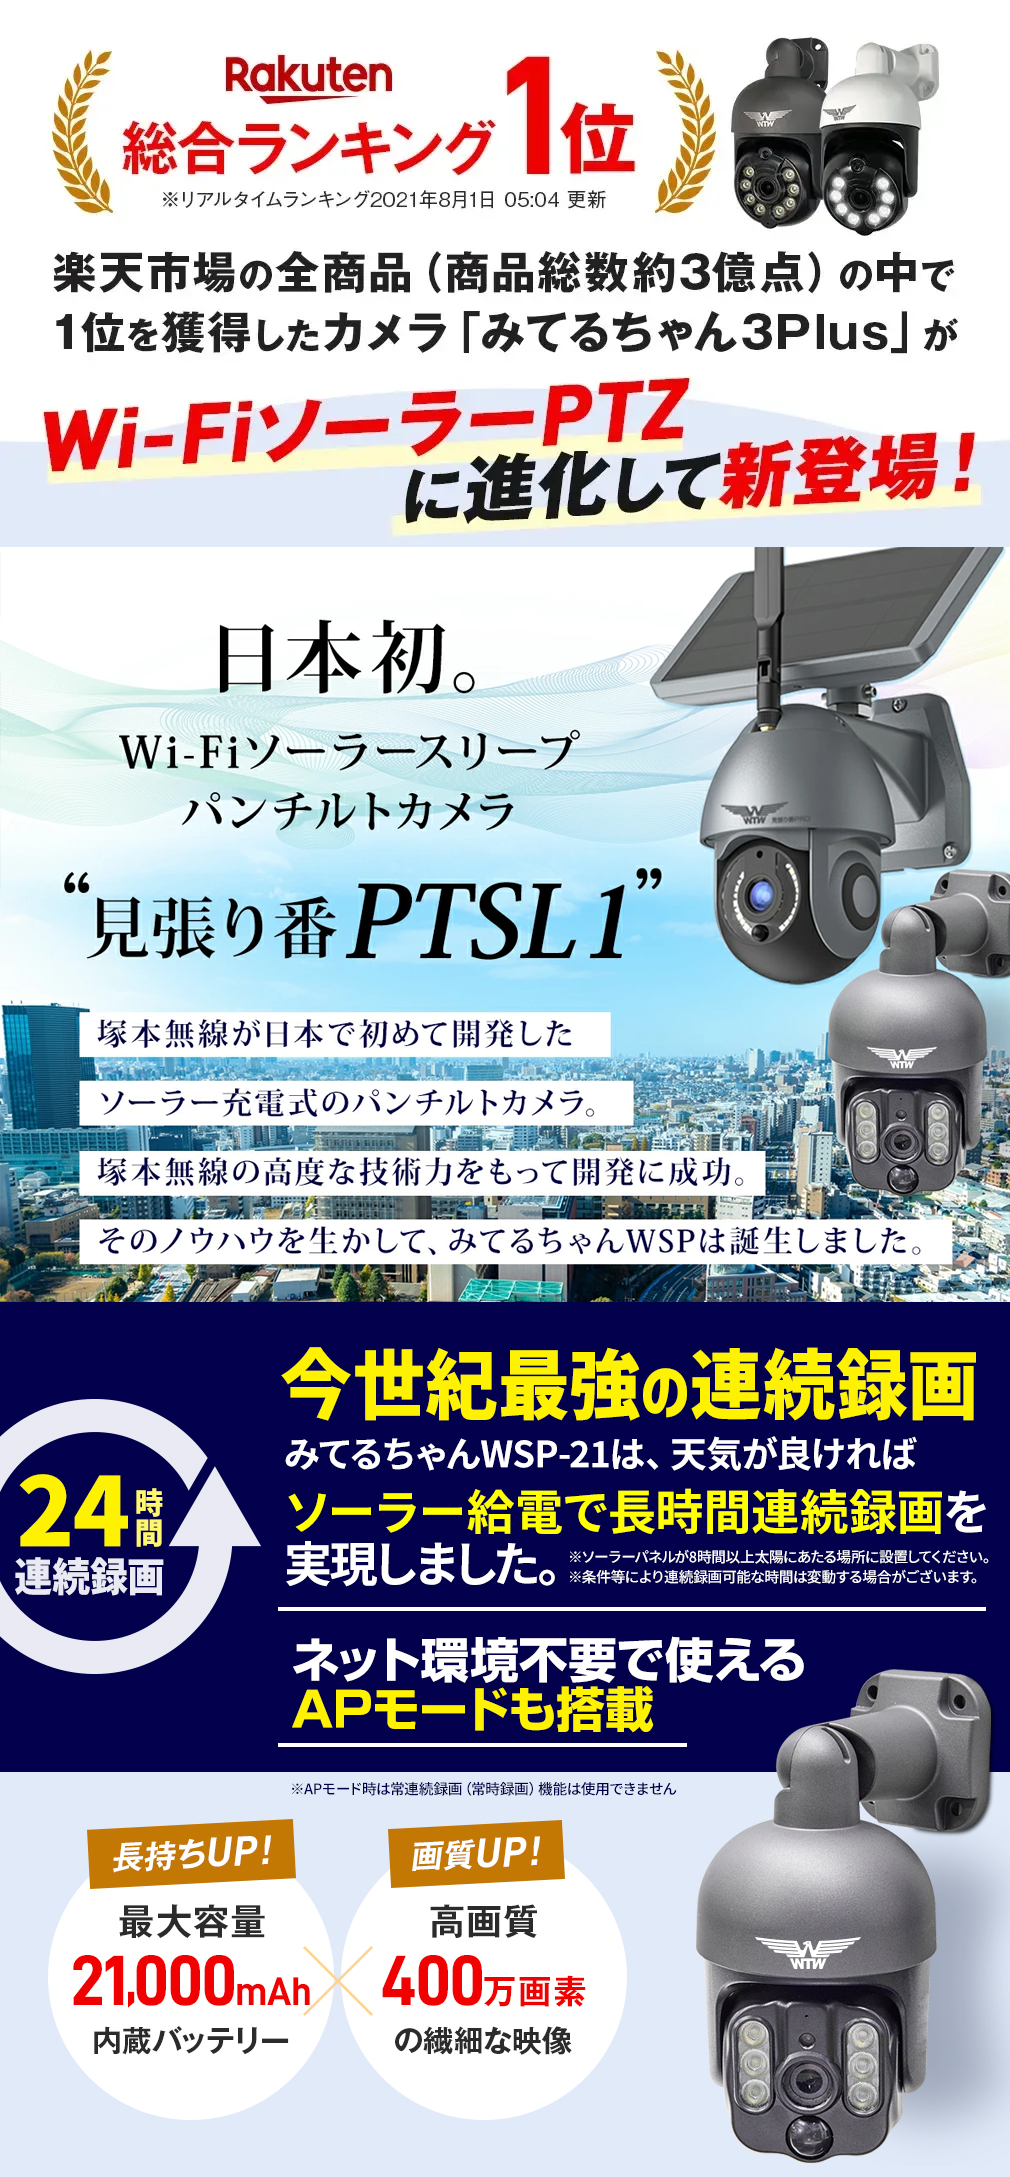 世界初のWIFIソーラーPTZ】みてるちゃんWSP 見張り番PTSL1技術を継承 